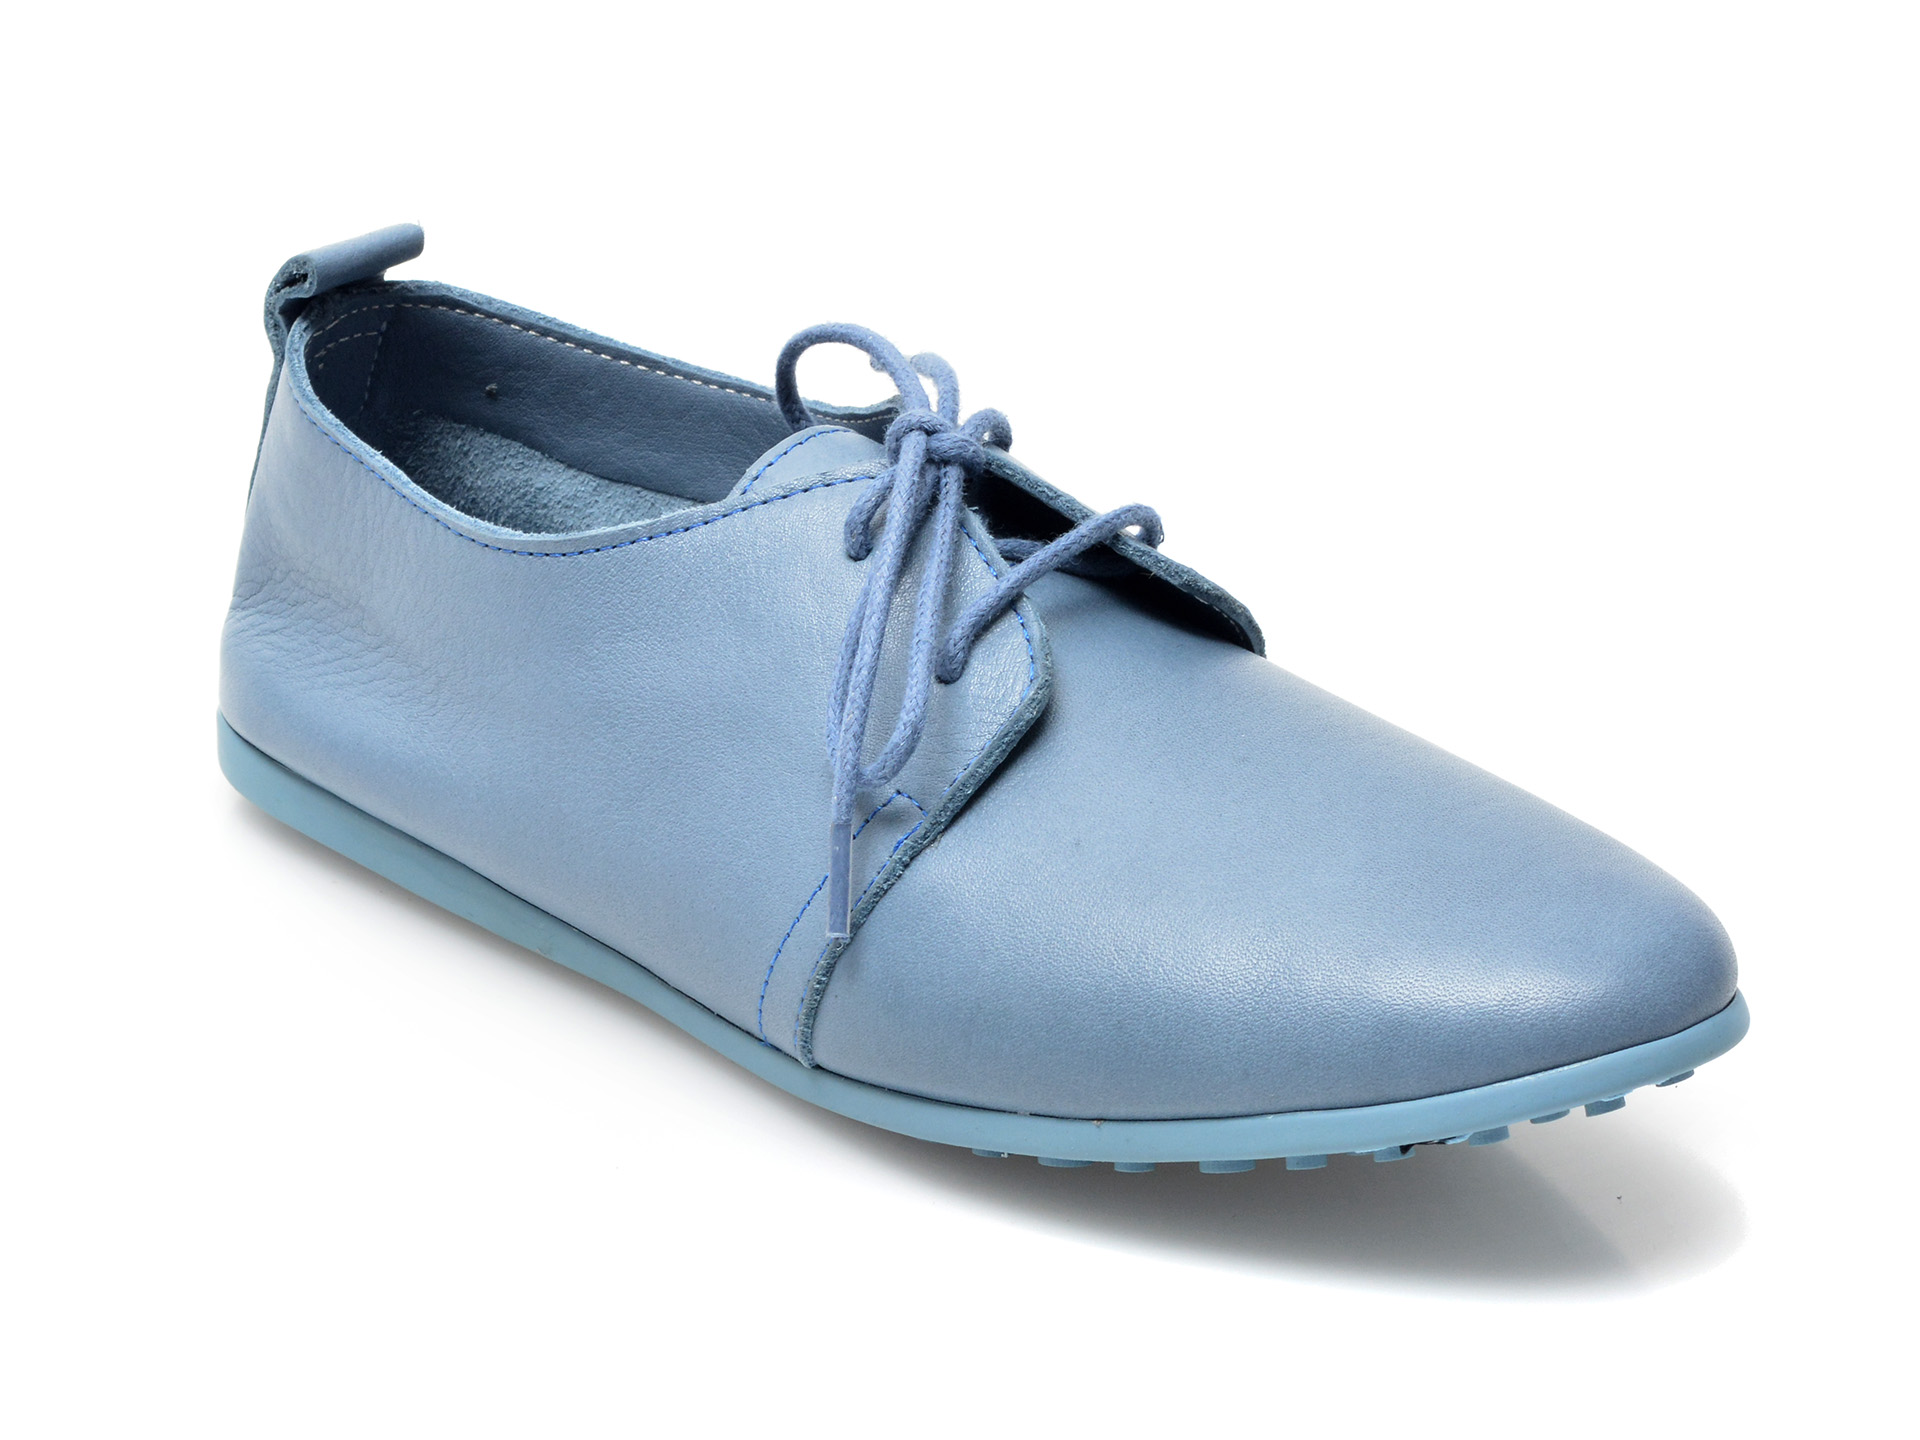 Pantofi FLAVIA PASSINI albastri, 91, din piele naturala Flavia Passini poza 2022